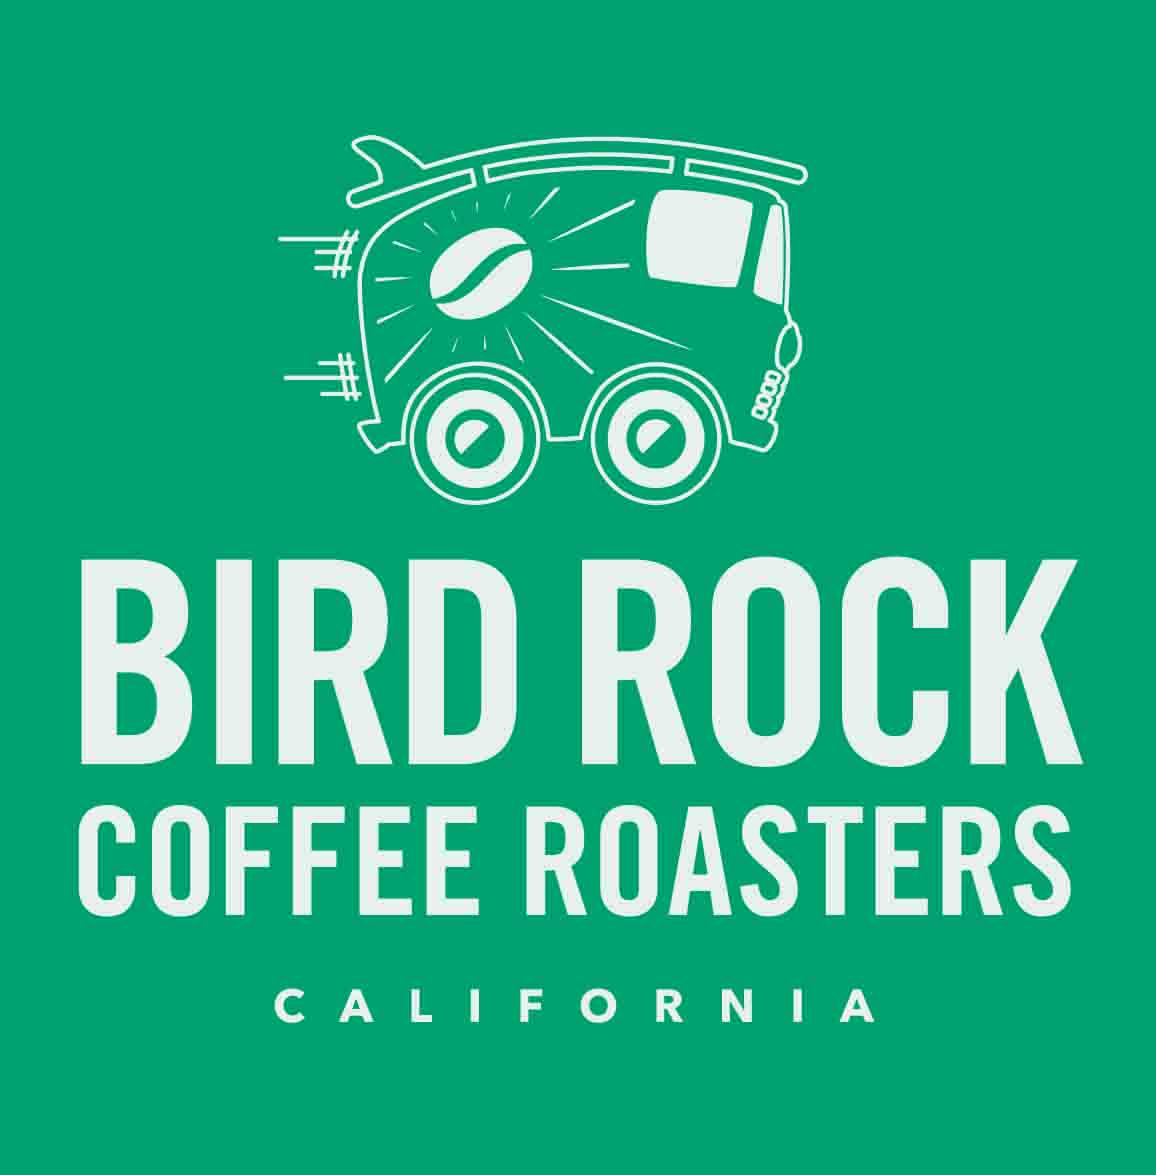 Bird Rock coffee